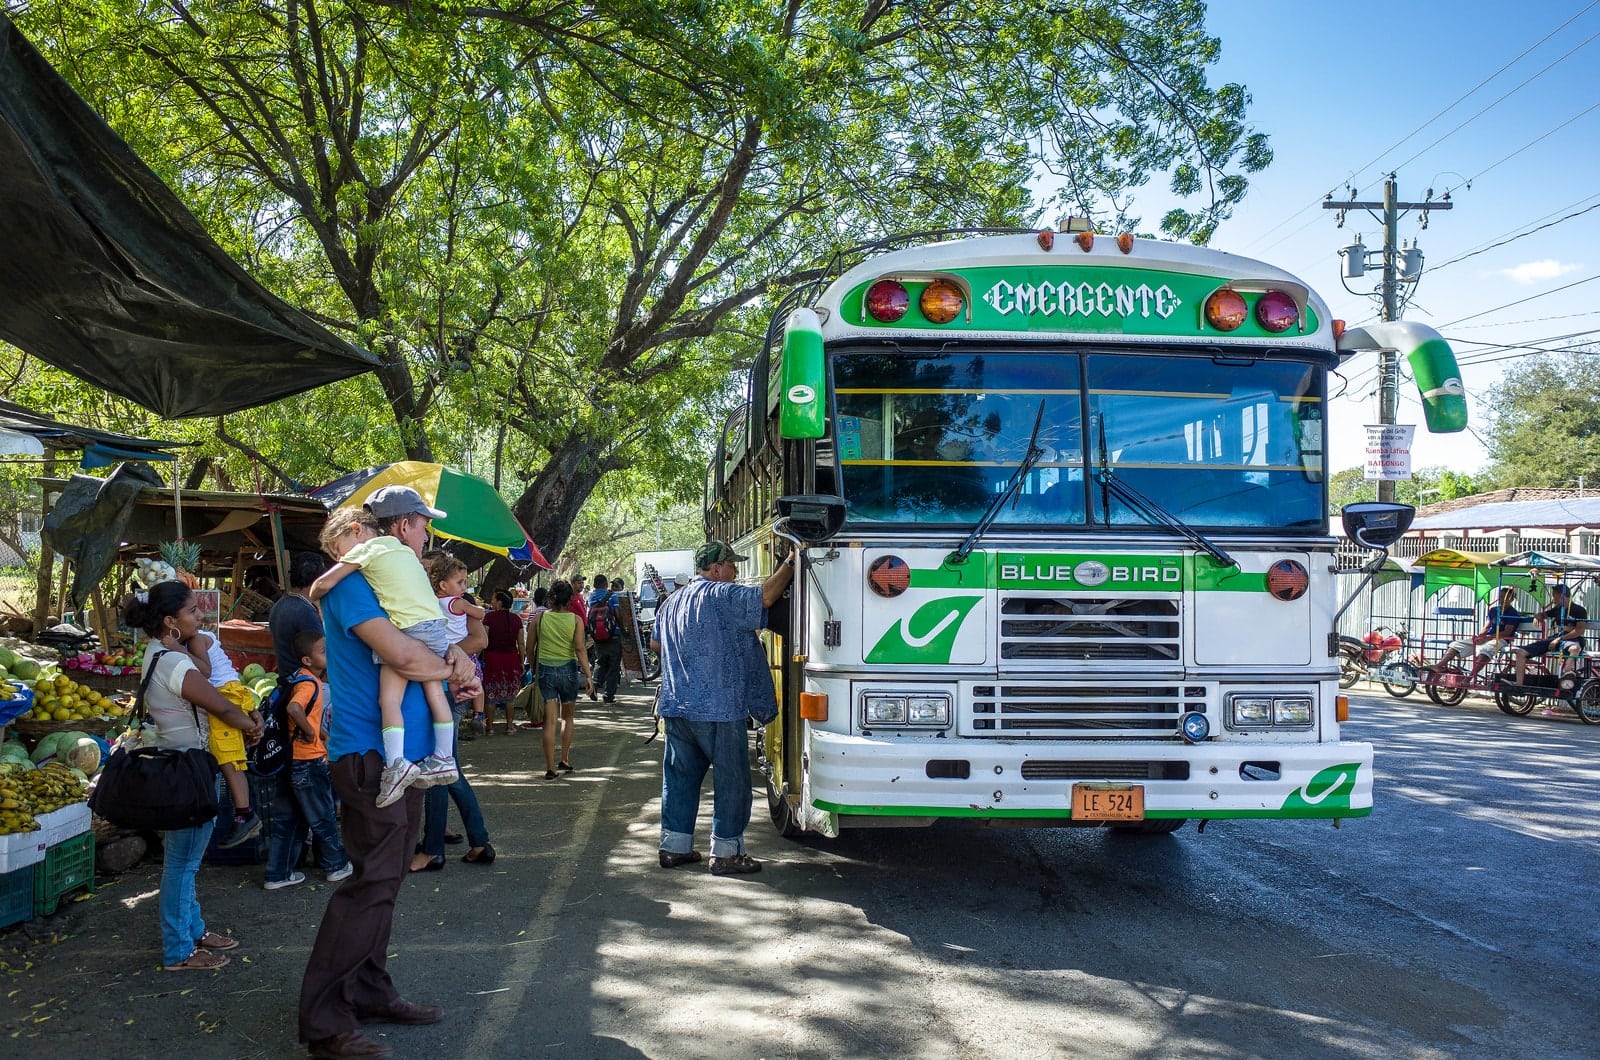 Parada de Bus, León, León, Nicaragua